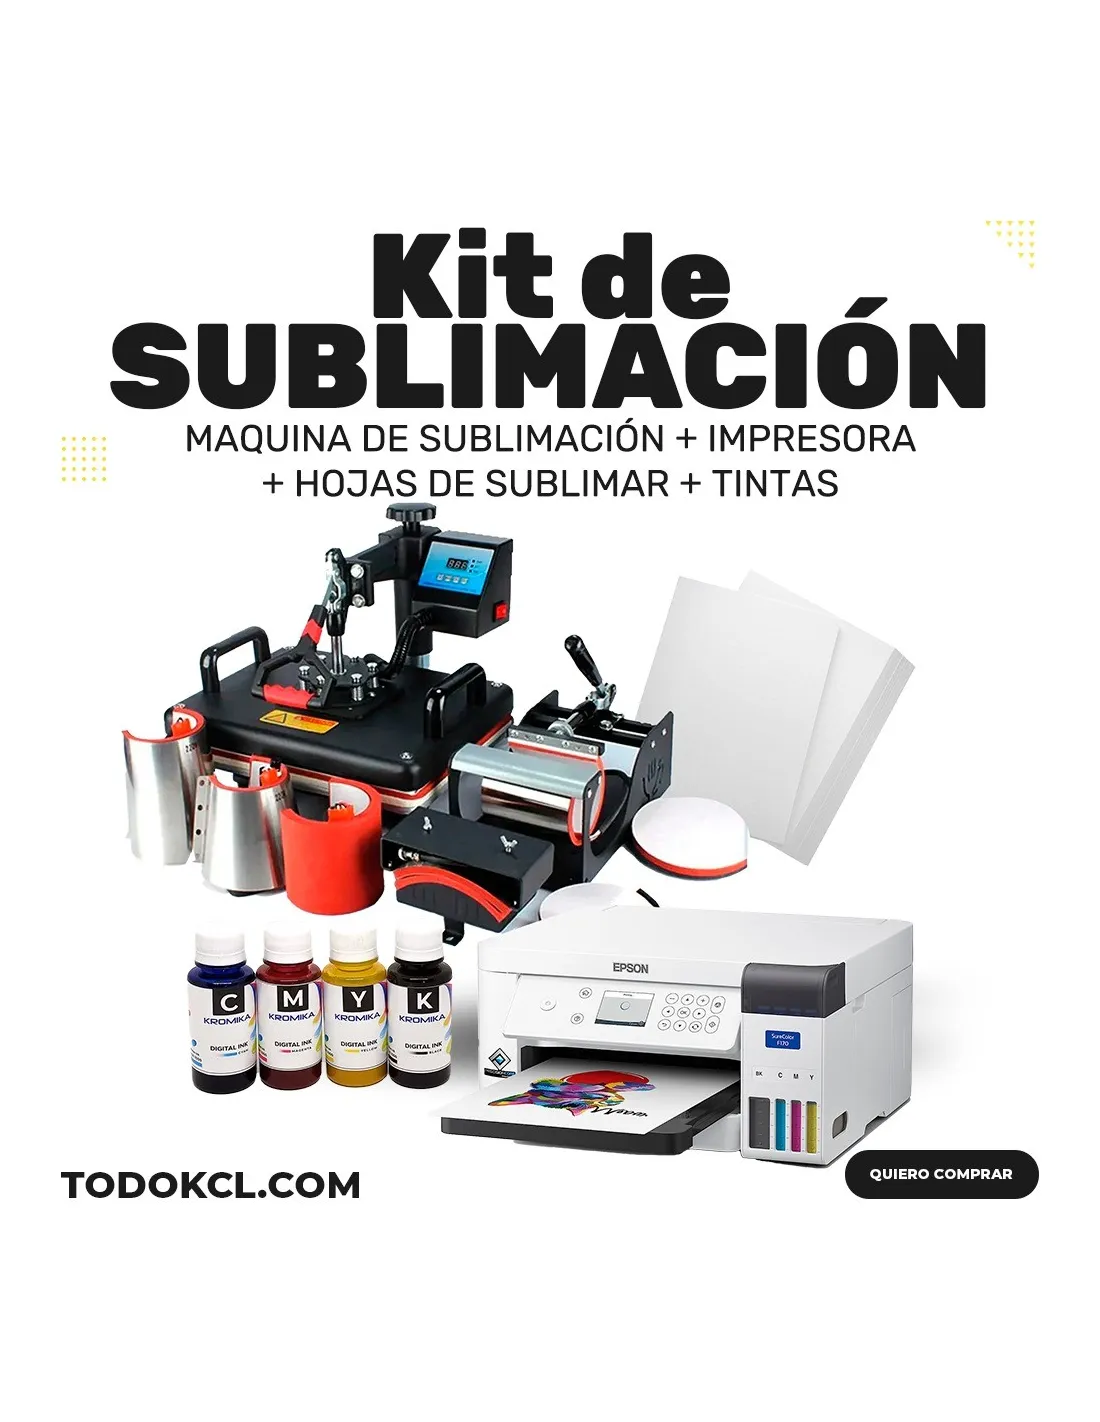 Kit de Sublimacion 15 en 1 + Impresora + Hojas + Tintas